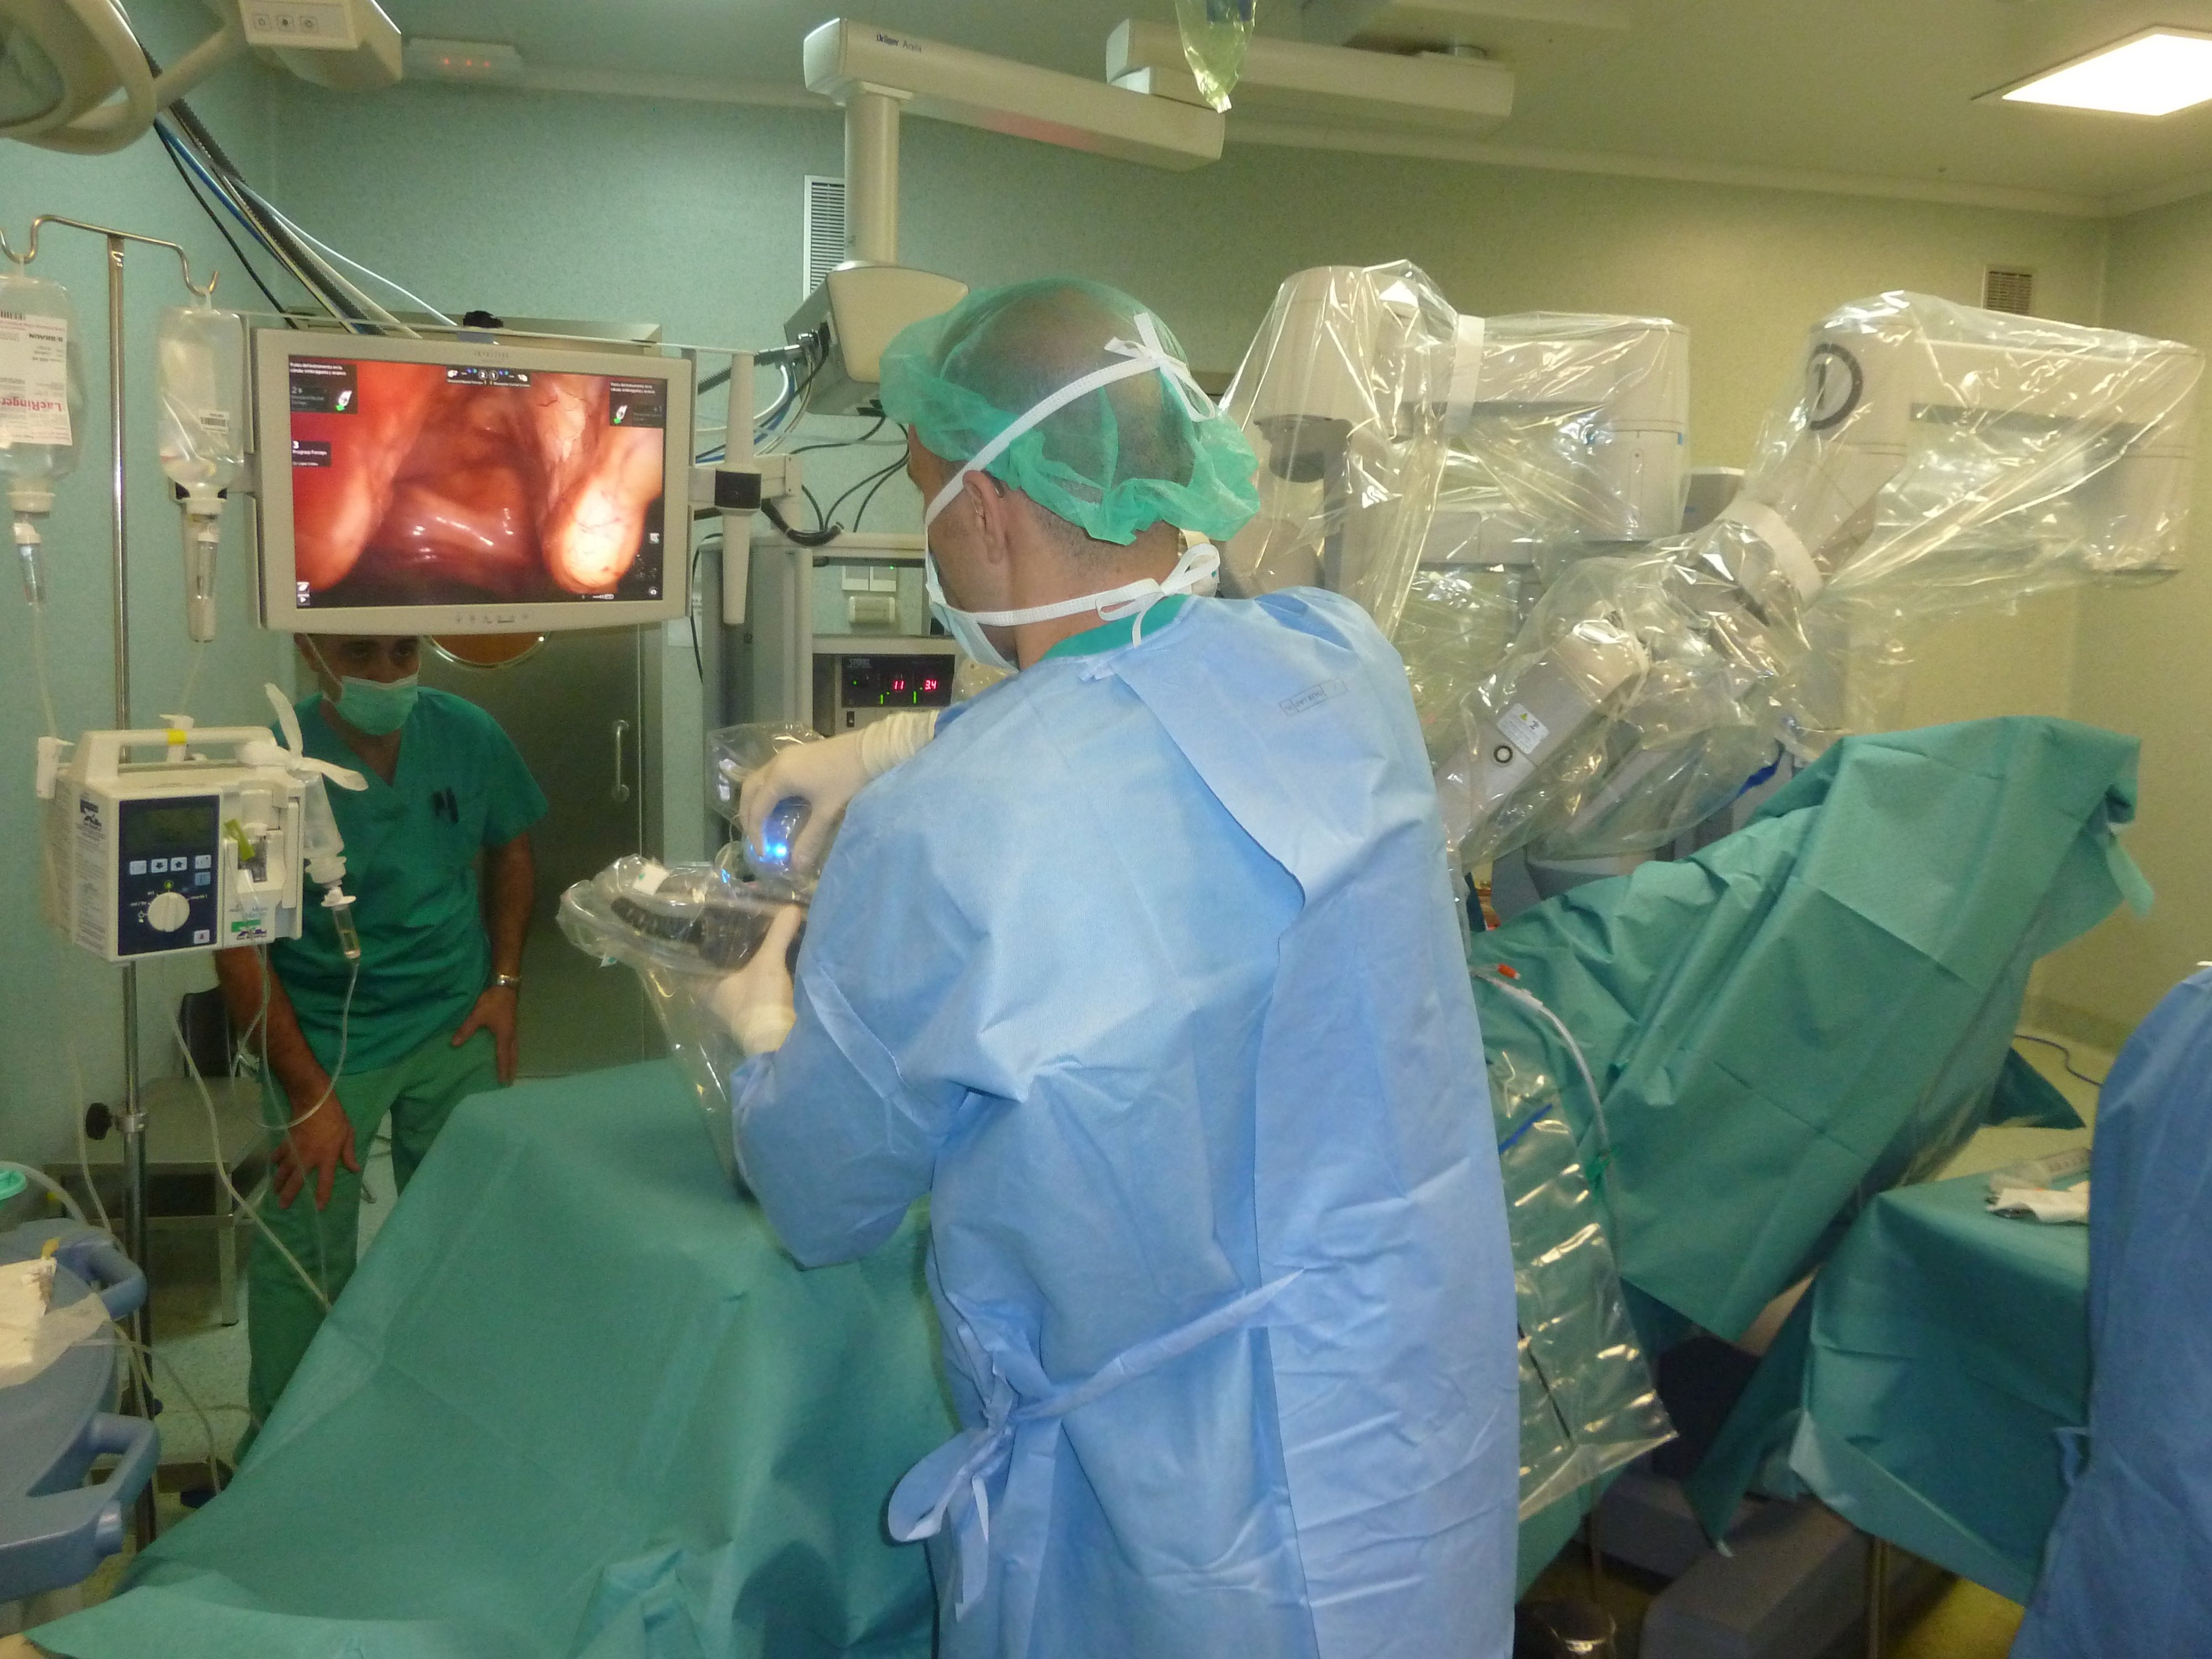 L'Hospital Quirónsalud Barcelona realitza 450 intervencions de cirurgia robòtica